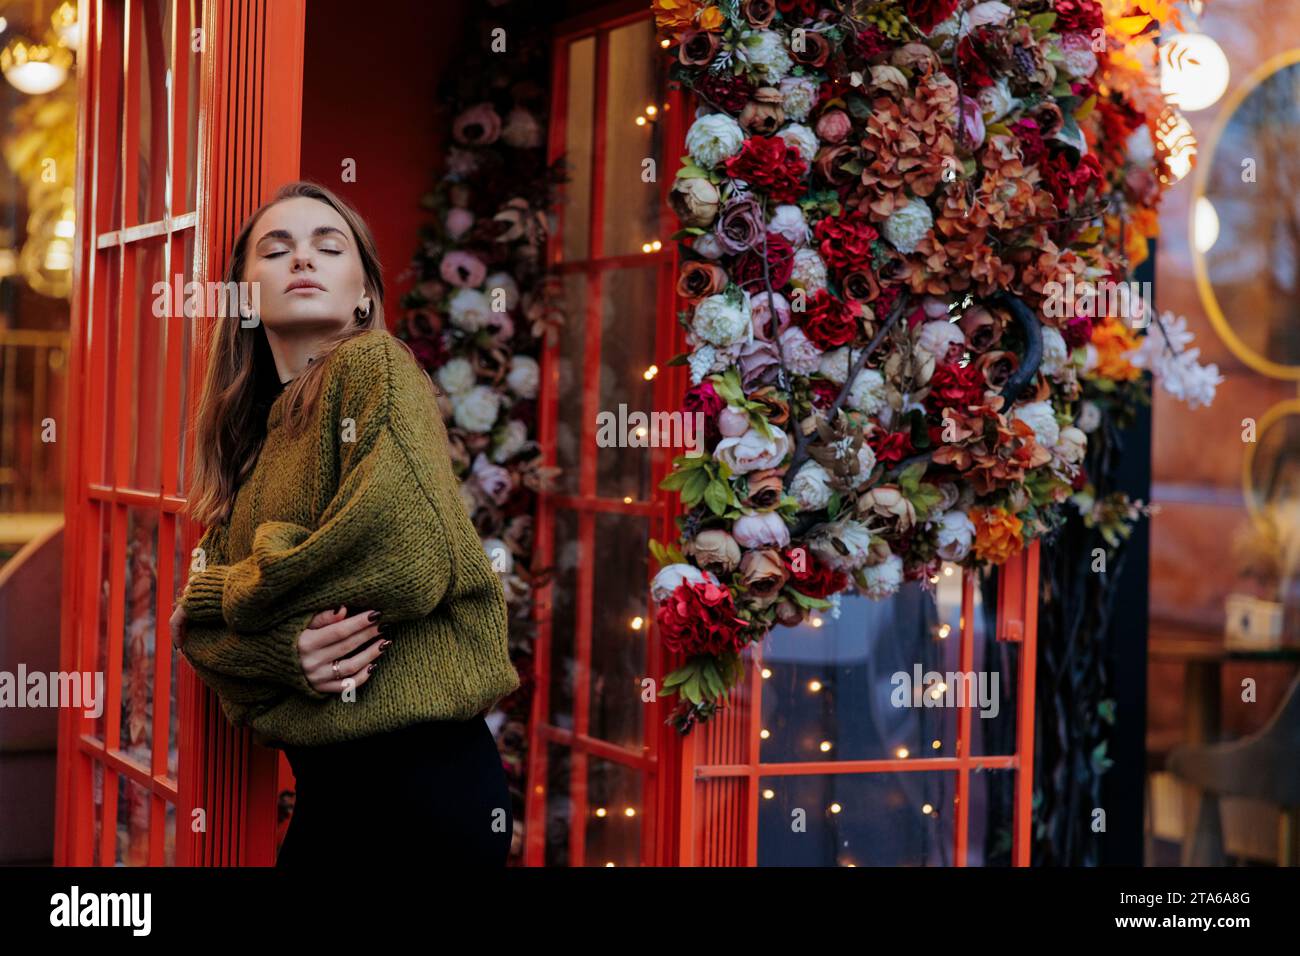 Blick auf die junge traurige Frau, die in der Nähe steht und mit Blumengirlanden und Lichtern geschmückt ist. Nahaufnahme. Stockfoto